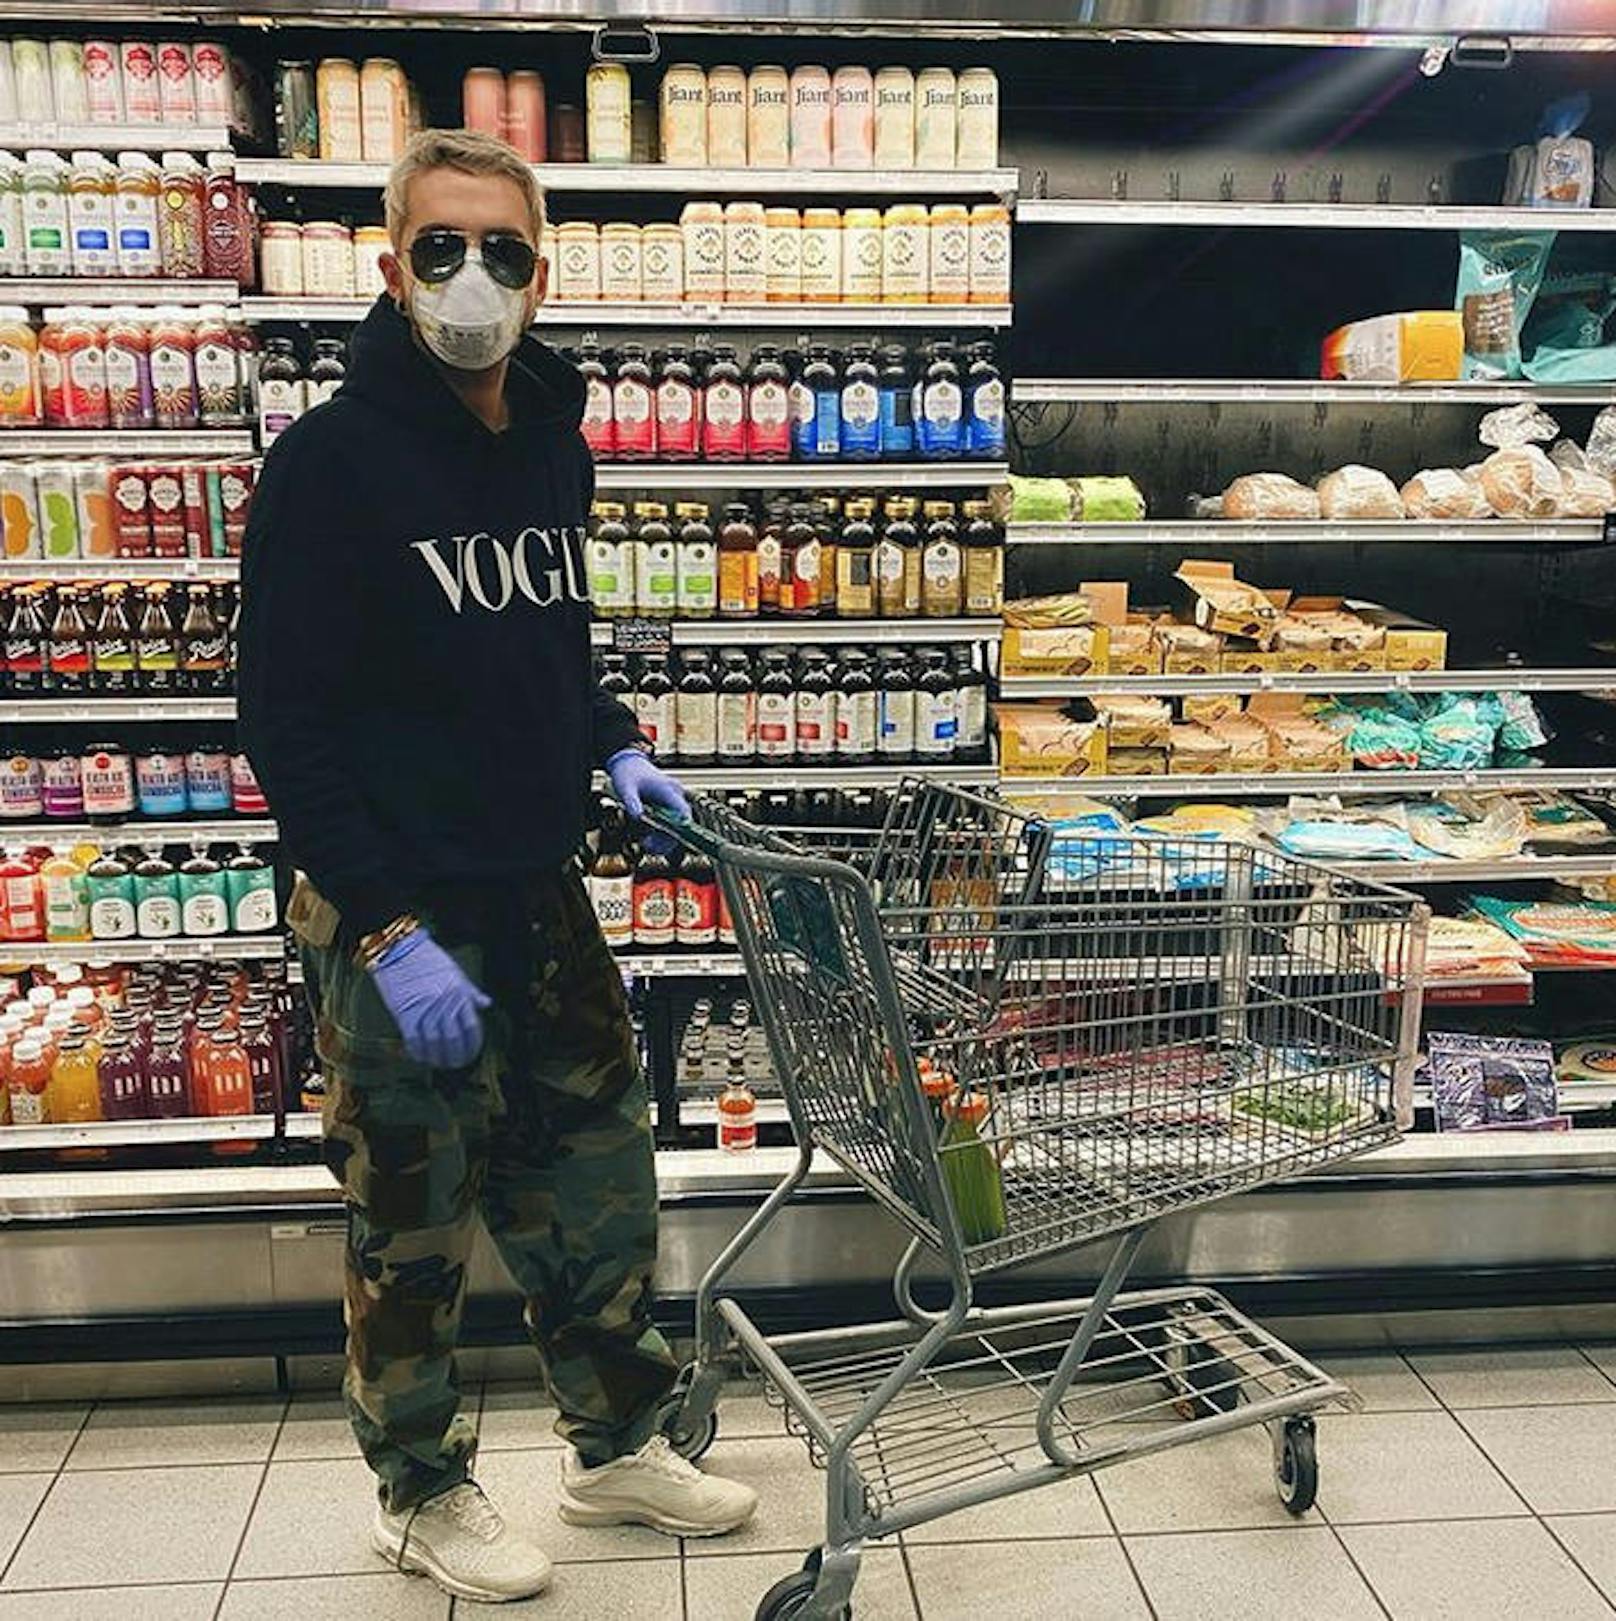 16.03.2020: "Wir brauchen Lebensmittel!" meint <strong>Bill Kaulitz</strong> und geht beim Einkaufen auf Nummer sicher. Der "Vogue"-Pulli darf dabei aber trotzdem nicht fehlen. So viel Glamour muss sein.